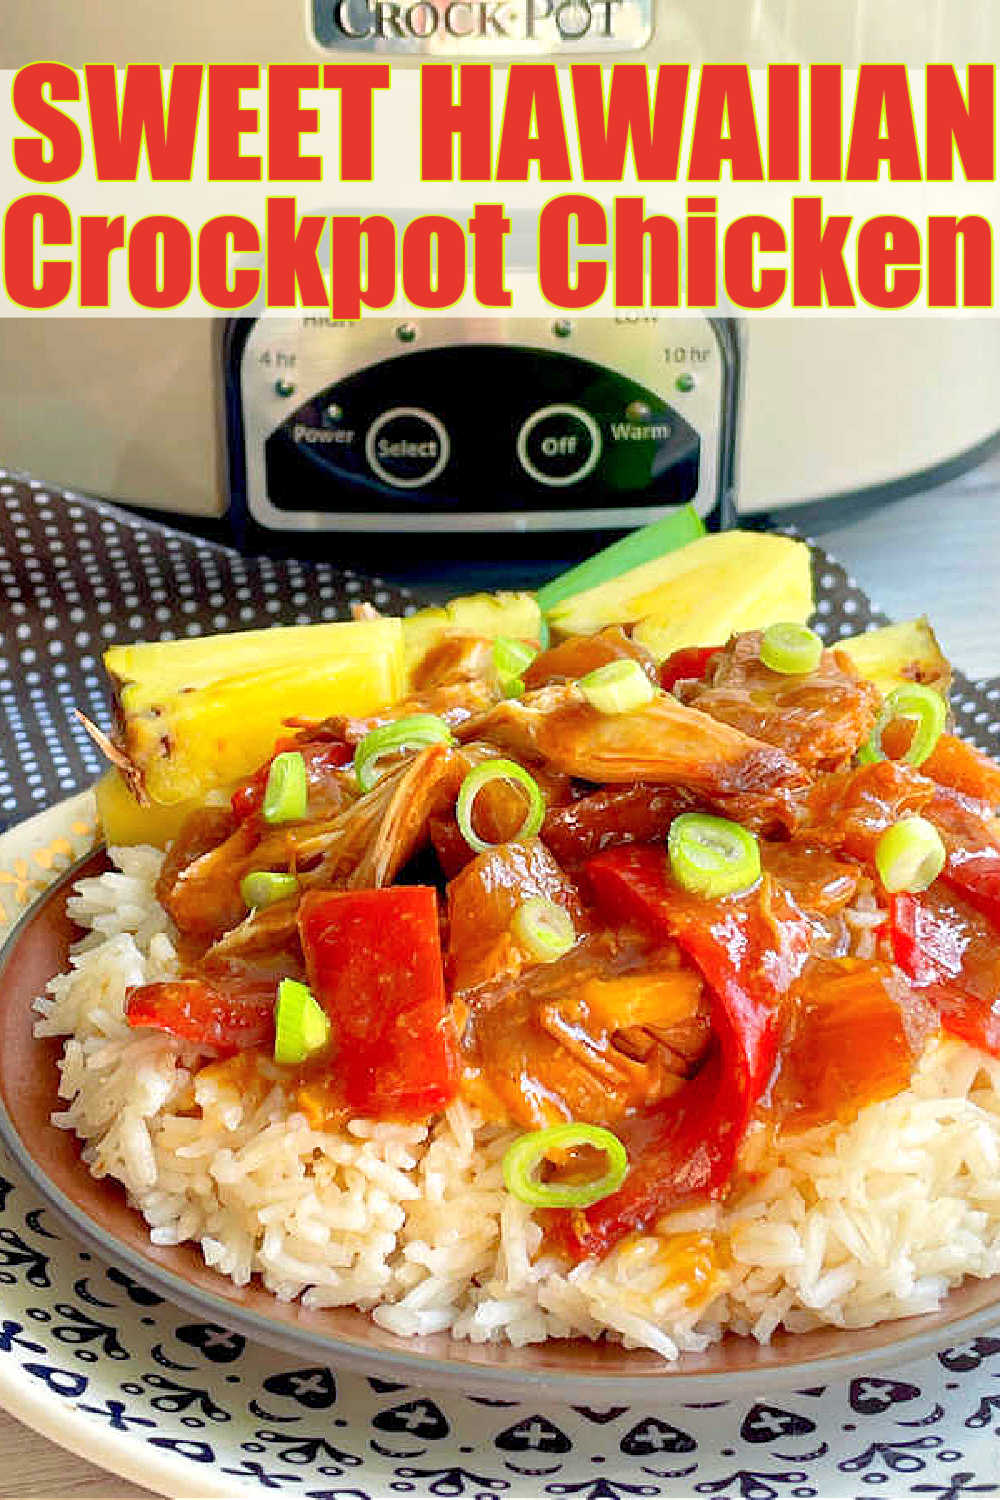 Sweet Hawaiian Crock Pot Chicken | Foodtastic Mom #crockpotrecipes #slowcookerrecipes #sweethawaiiancrockpotchicken #chickenrecipes via @foodtasticmom